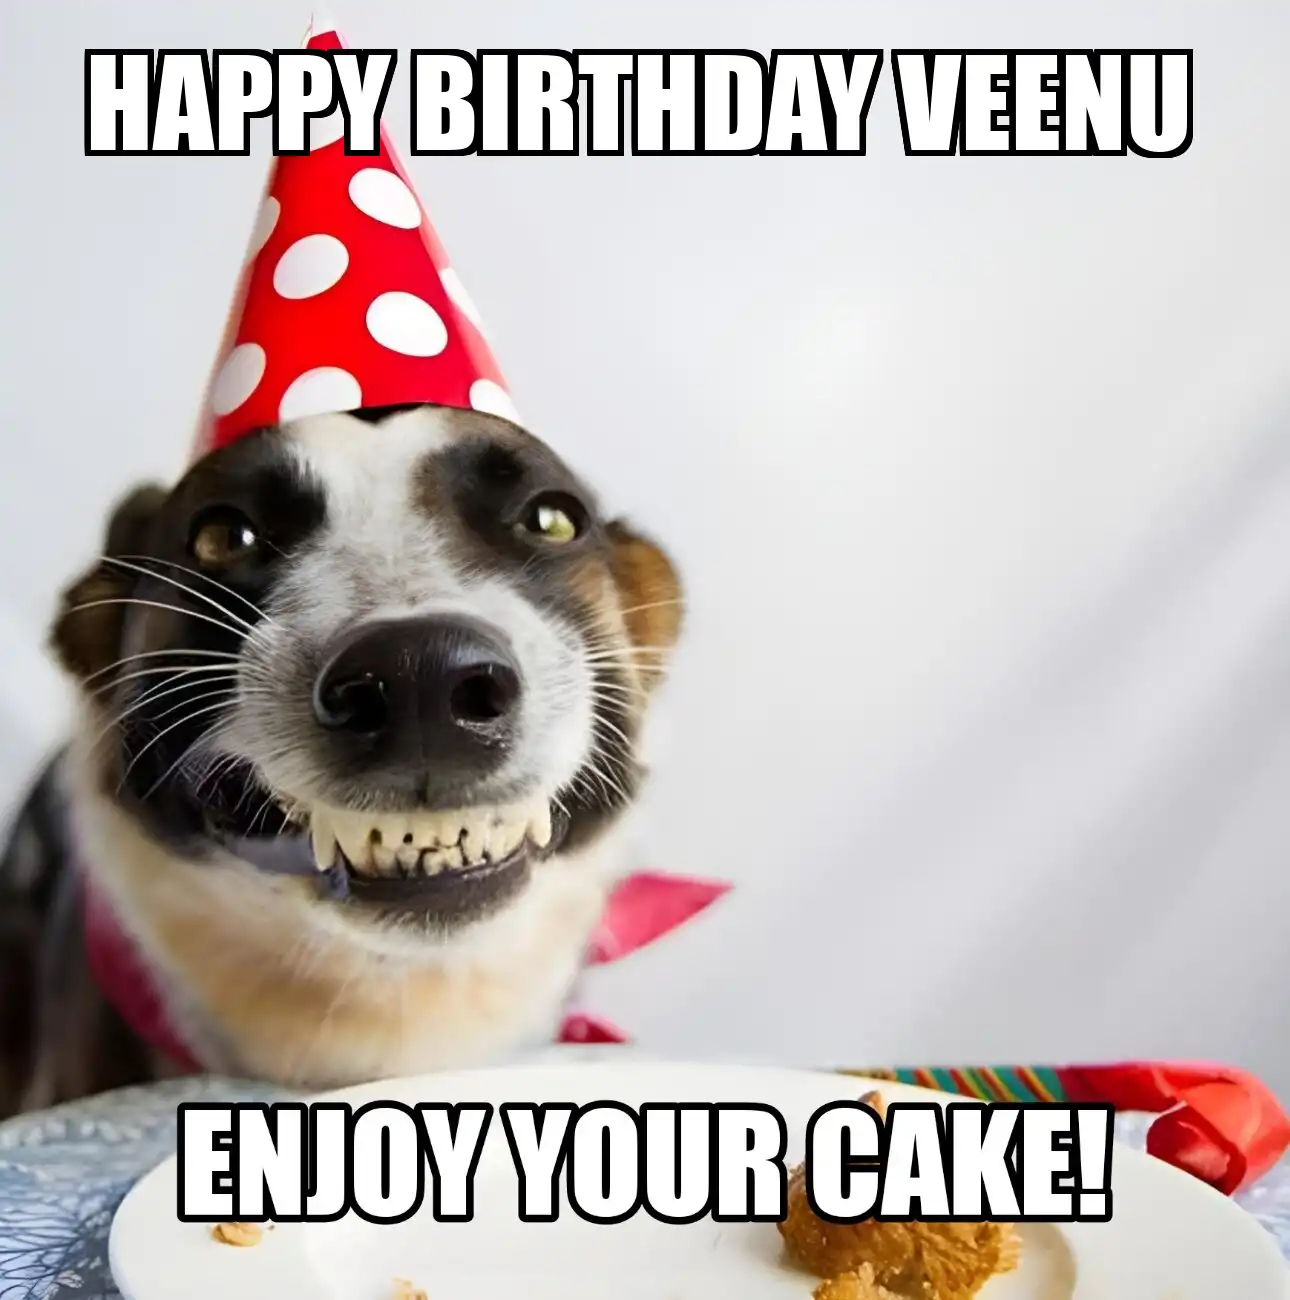 Happy Birthday Veenu Enjoy Your Cake Dog Meme